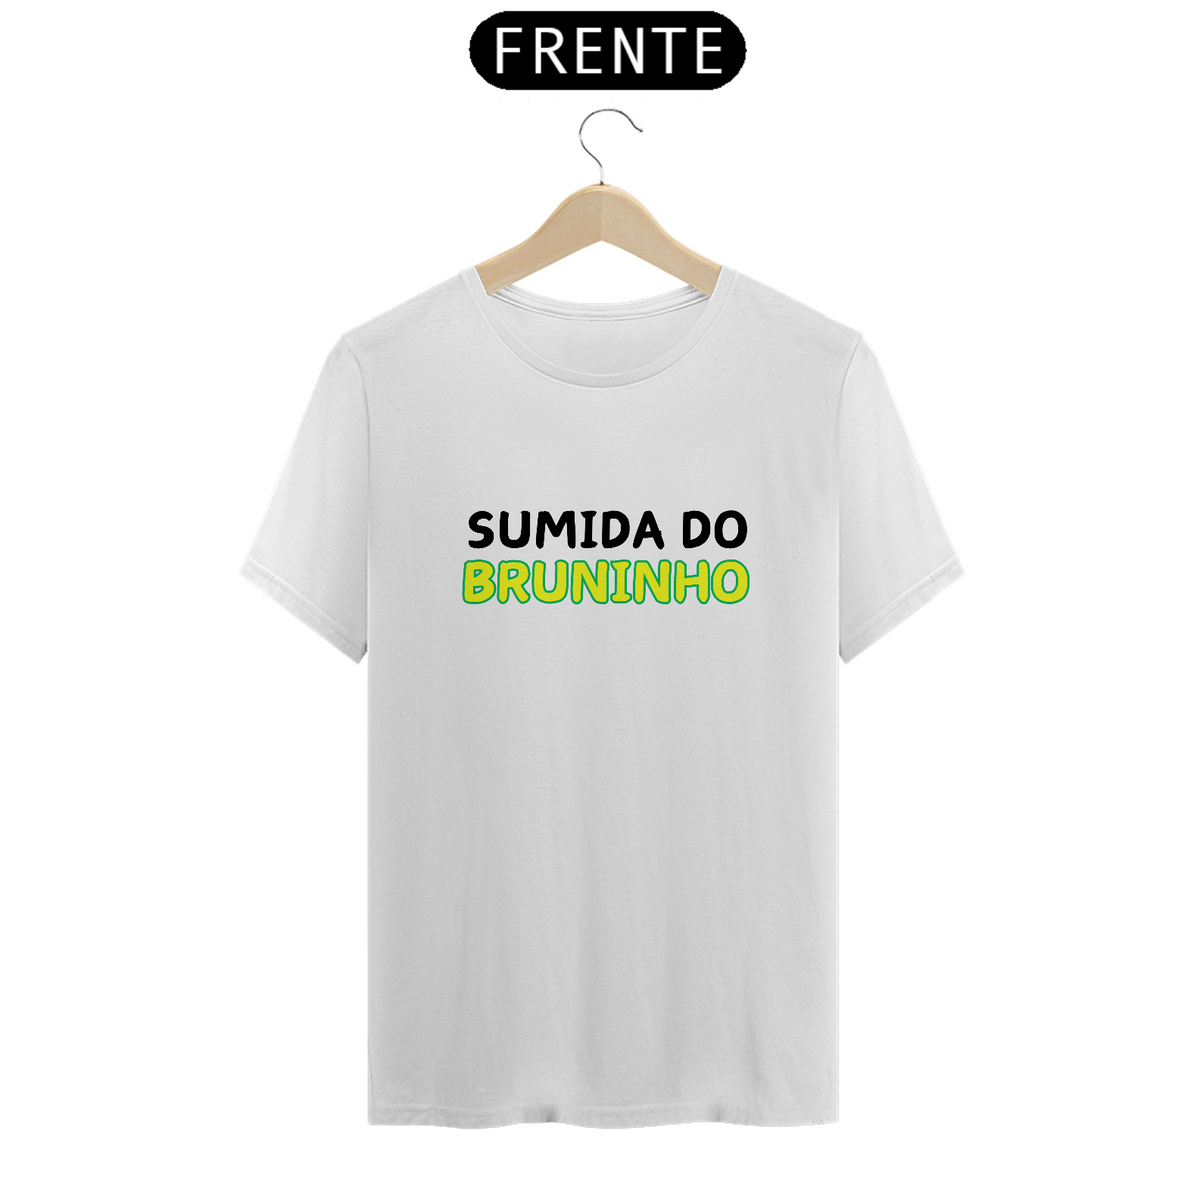 Nome do produto: Camiseta Sumida do Bruninho